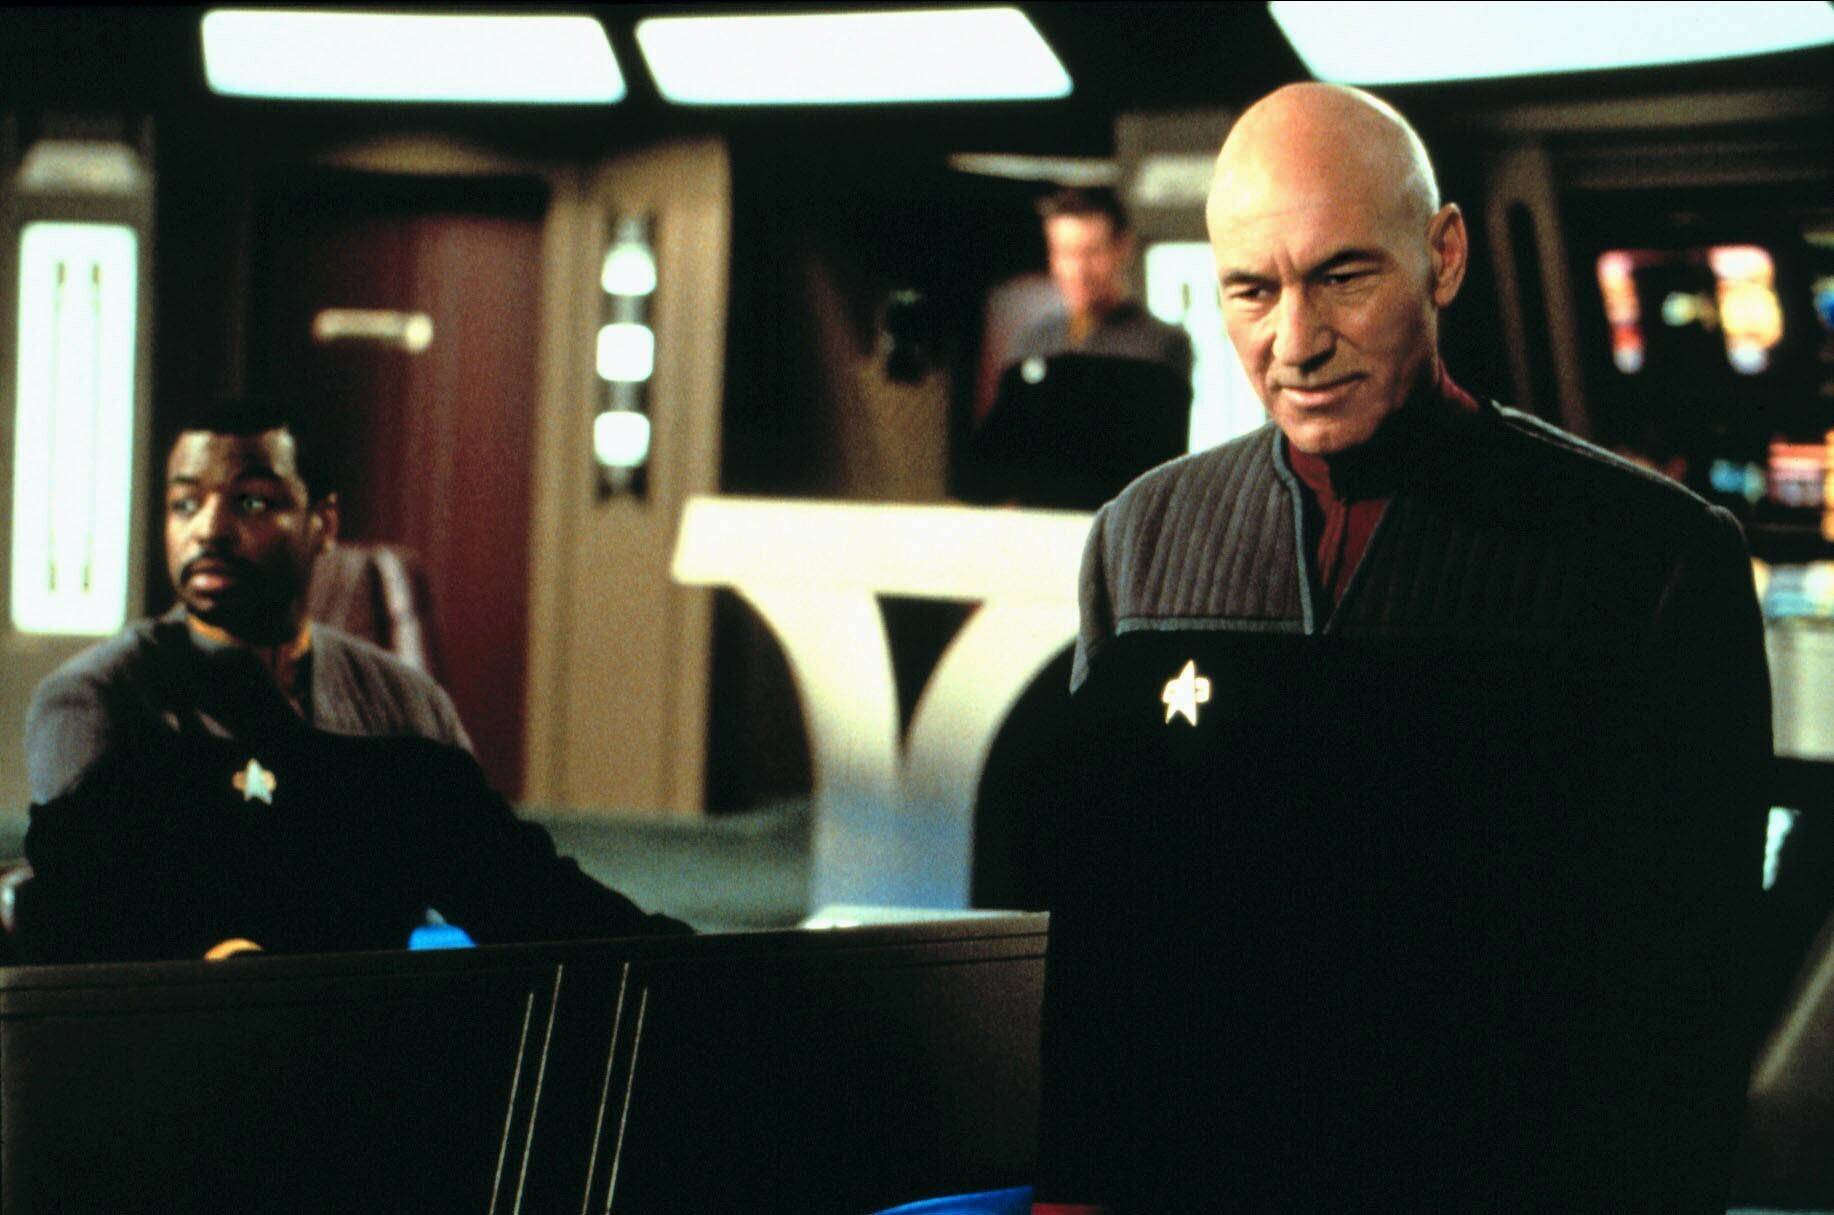 L'abilità diplomatica, la profondità intellettuale e l'integrità etica del Capitano Picard lo rendono il preferito dai fan. Il suo contegno calmo e la sua saggia leadership a bordo della USS Enterprise gli hanno fatto guadagnare l'ammirazione e il rispetto dei Trekkies di tutto il mondo.